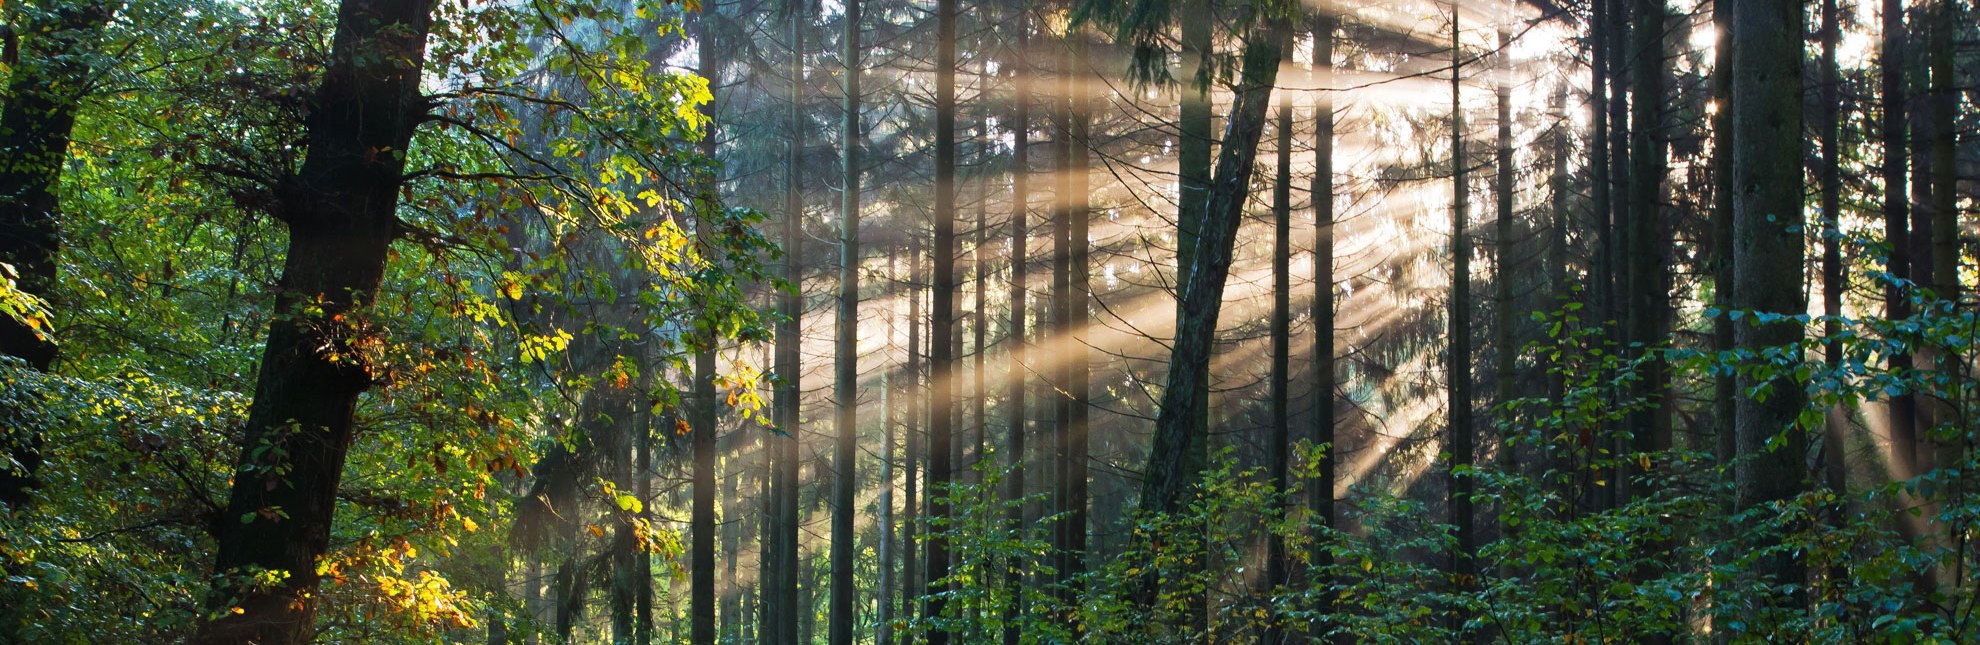 Morgenstimmung im Wald bei Sterley in der Nähe von Mölln., © Thomas Ebelt / HLMS GmbH